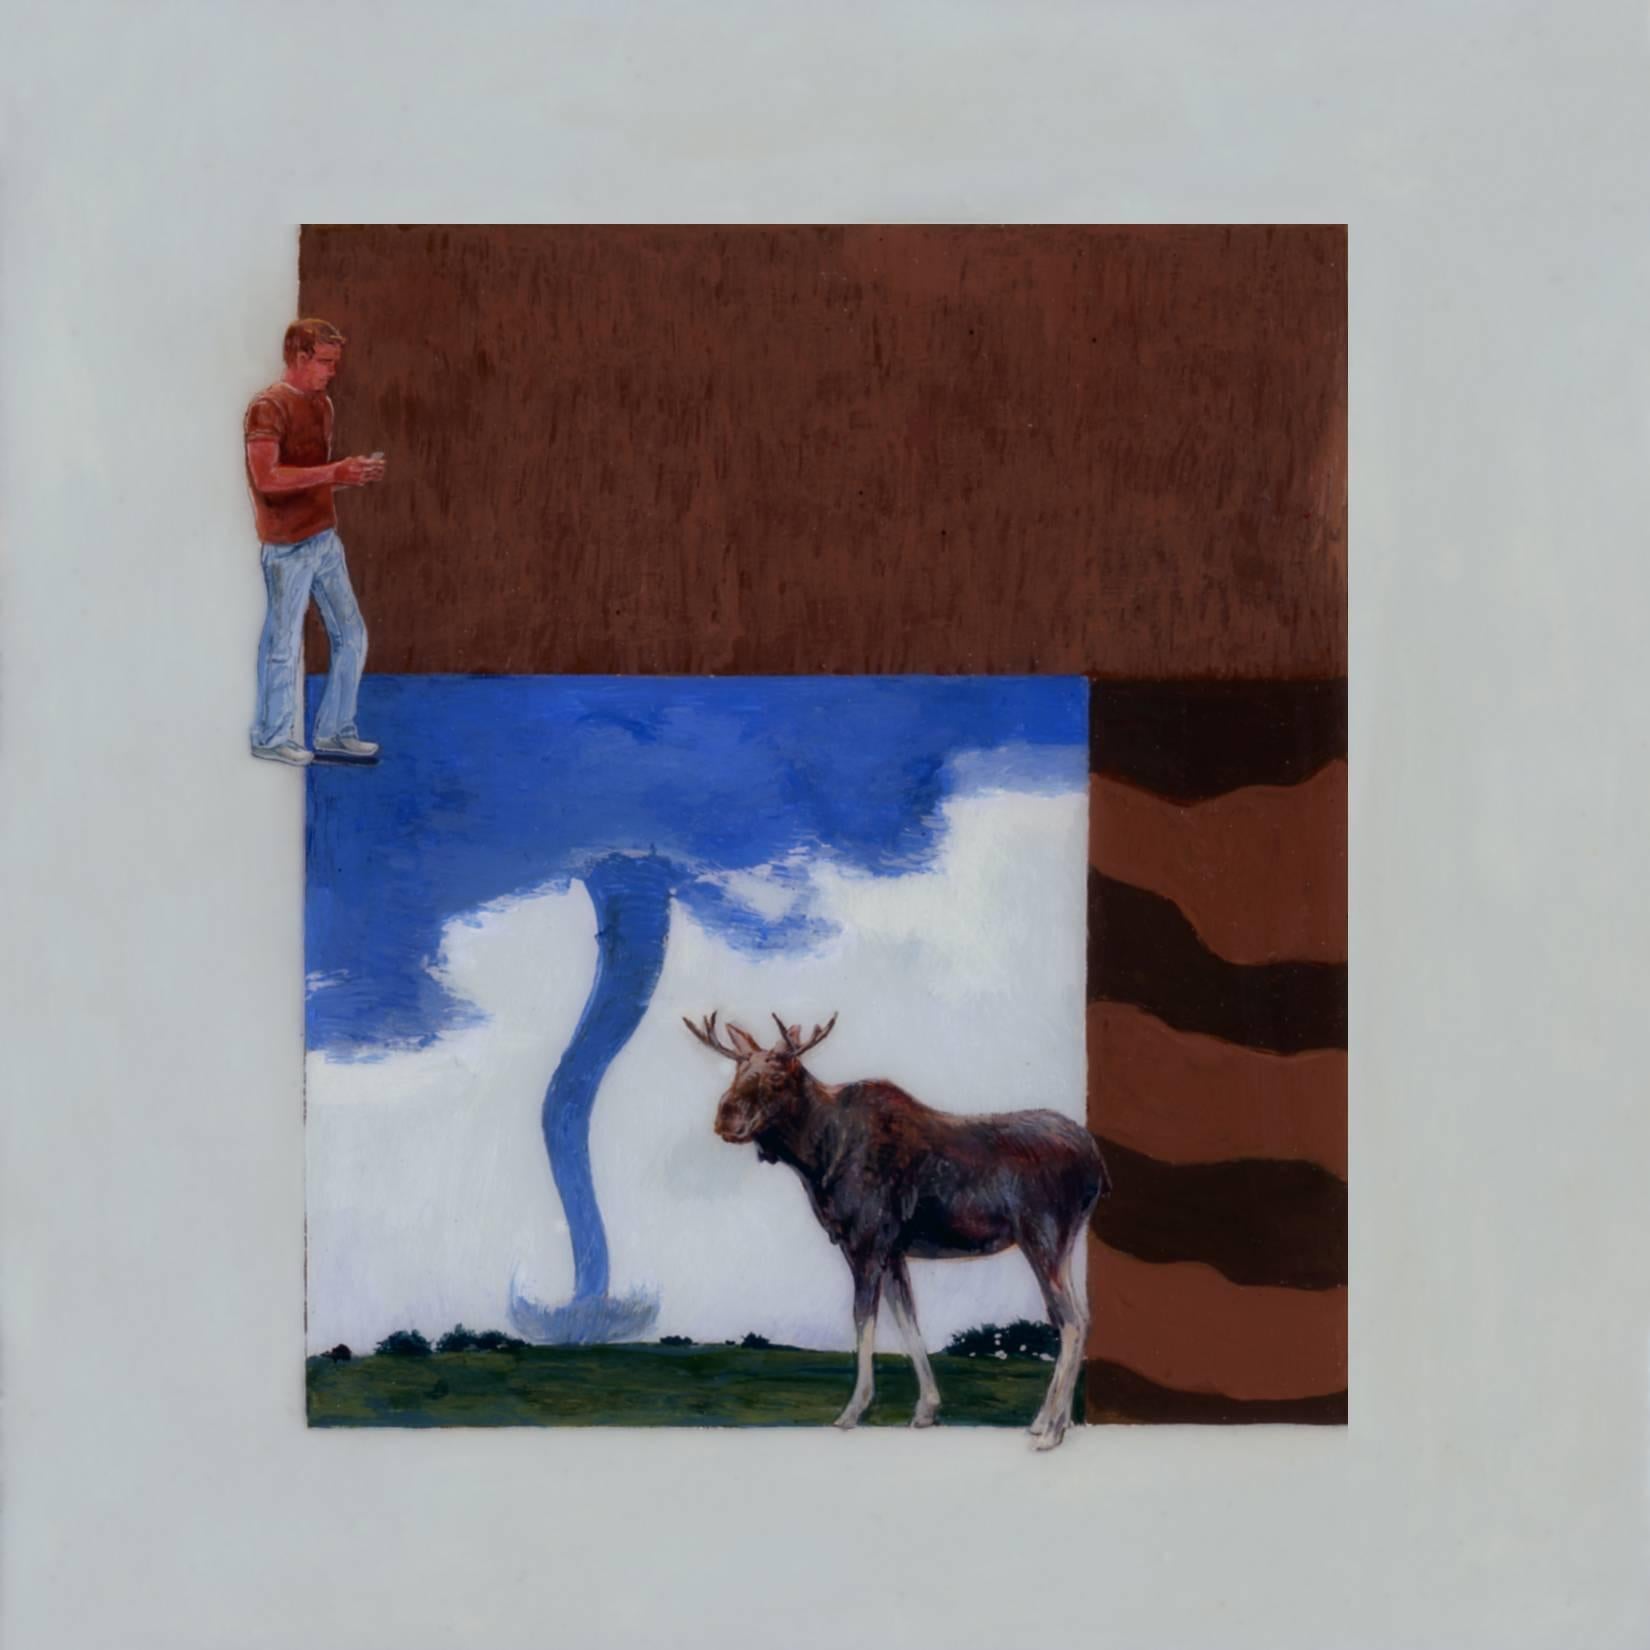 Figurative Painting Adam Mysock - Davie Crockett, Pecos Bill, la fête du taureau et un homme se promenant dans un cadre